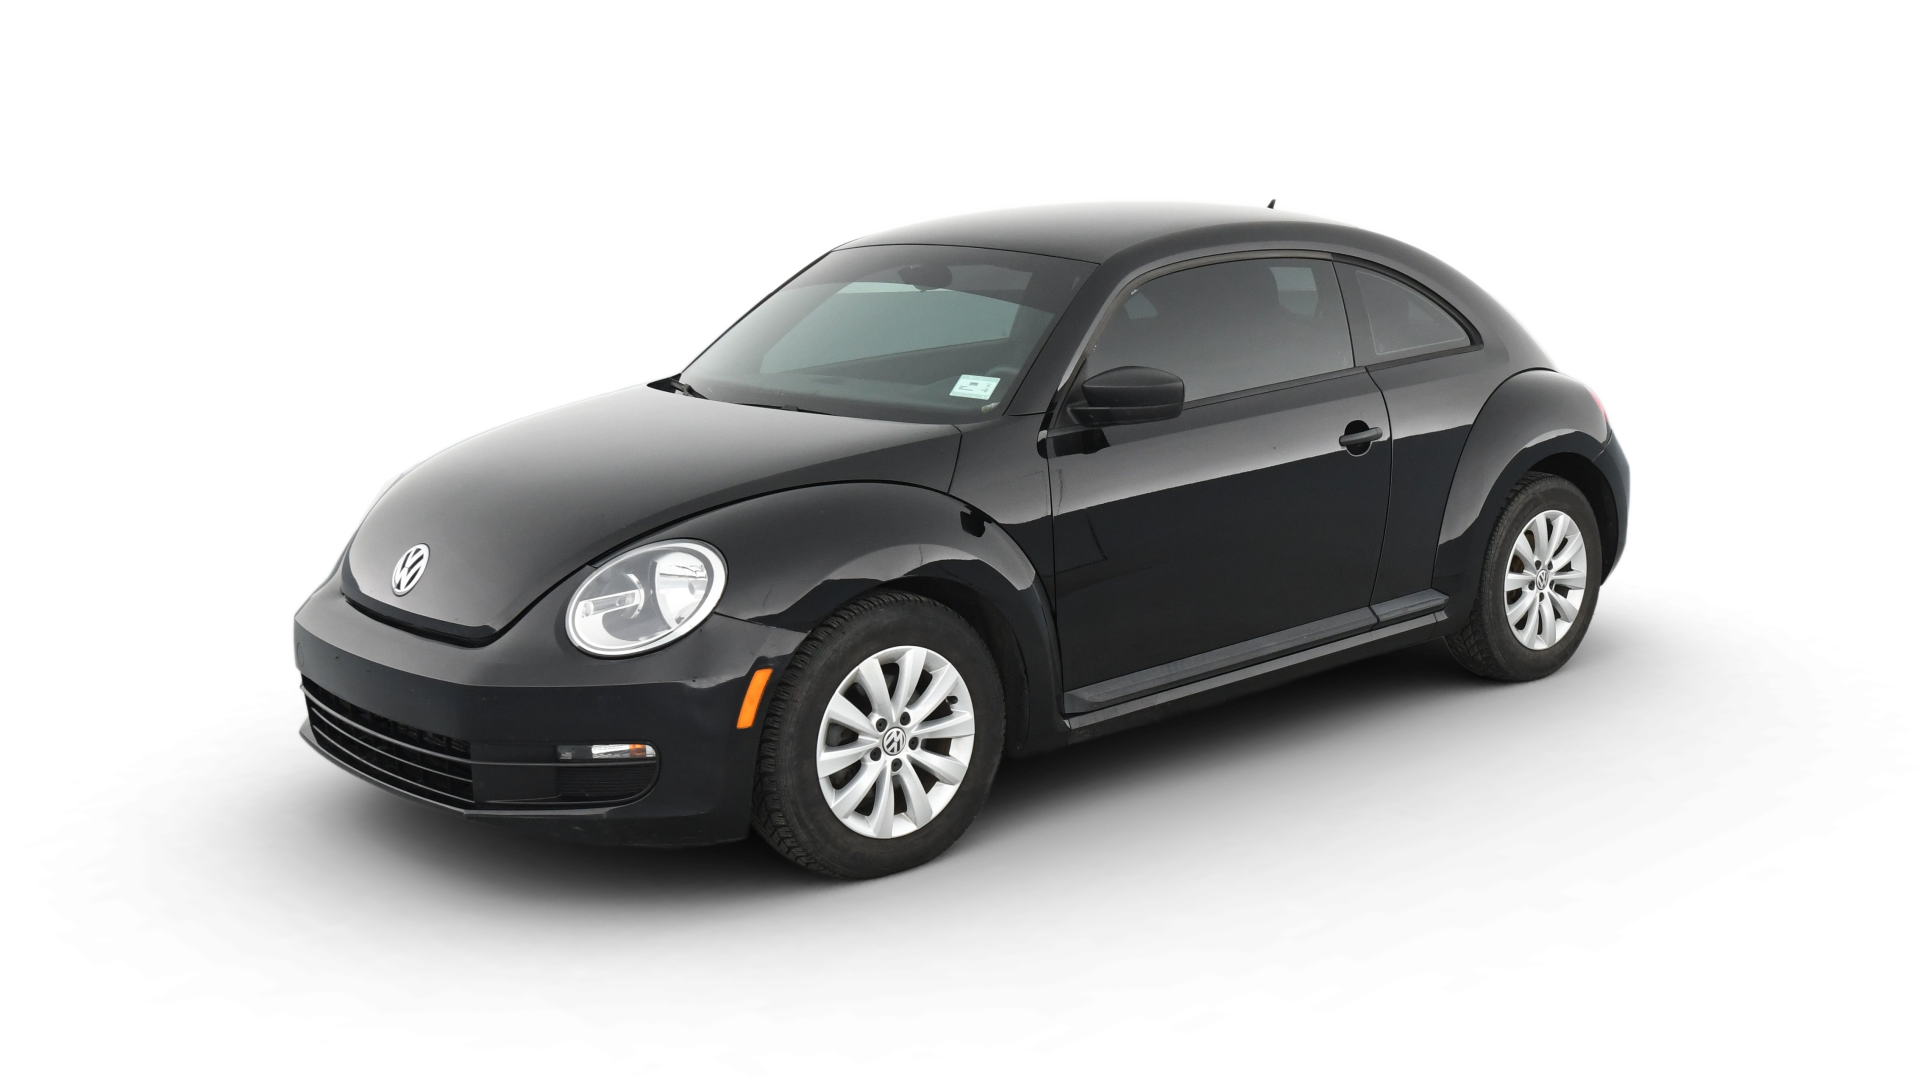 Volkswagen Beetle model image.